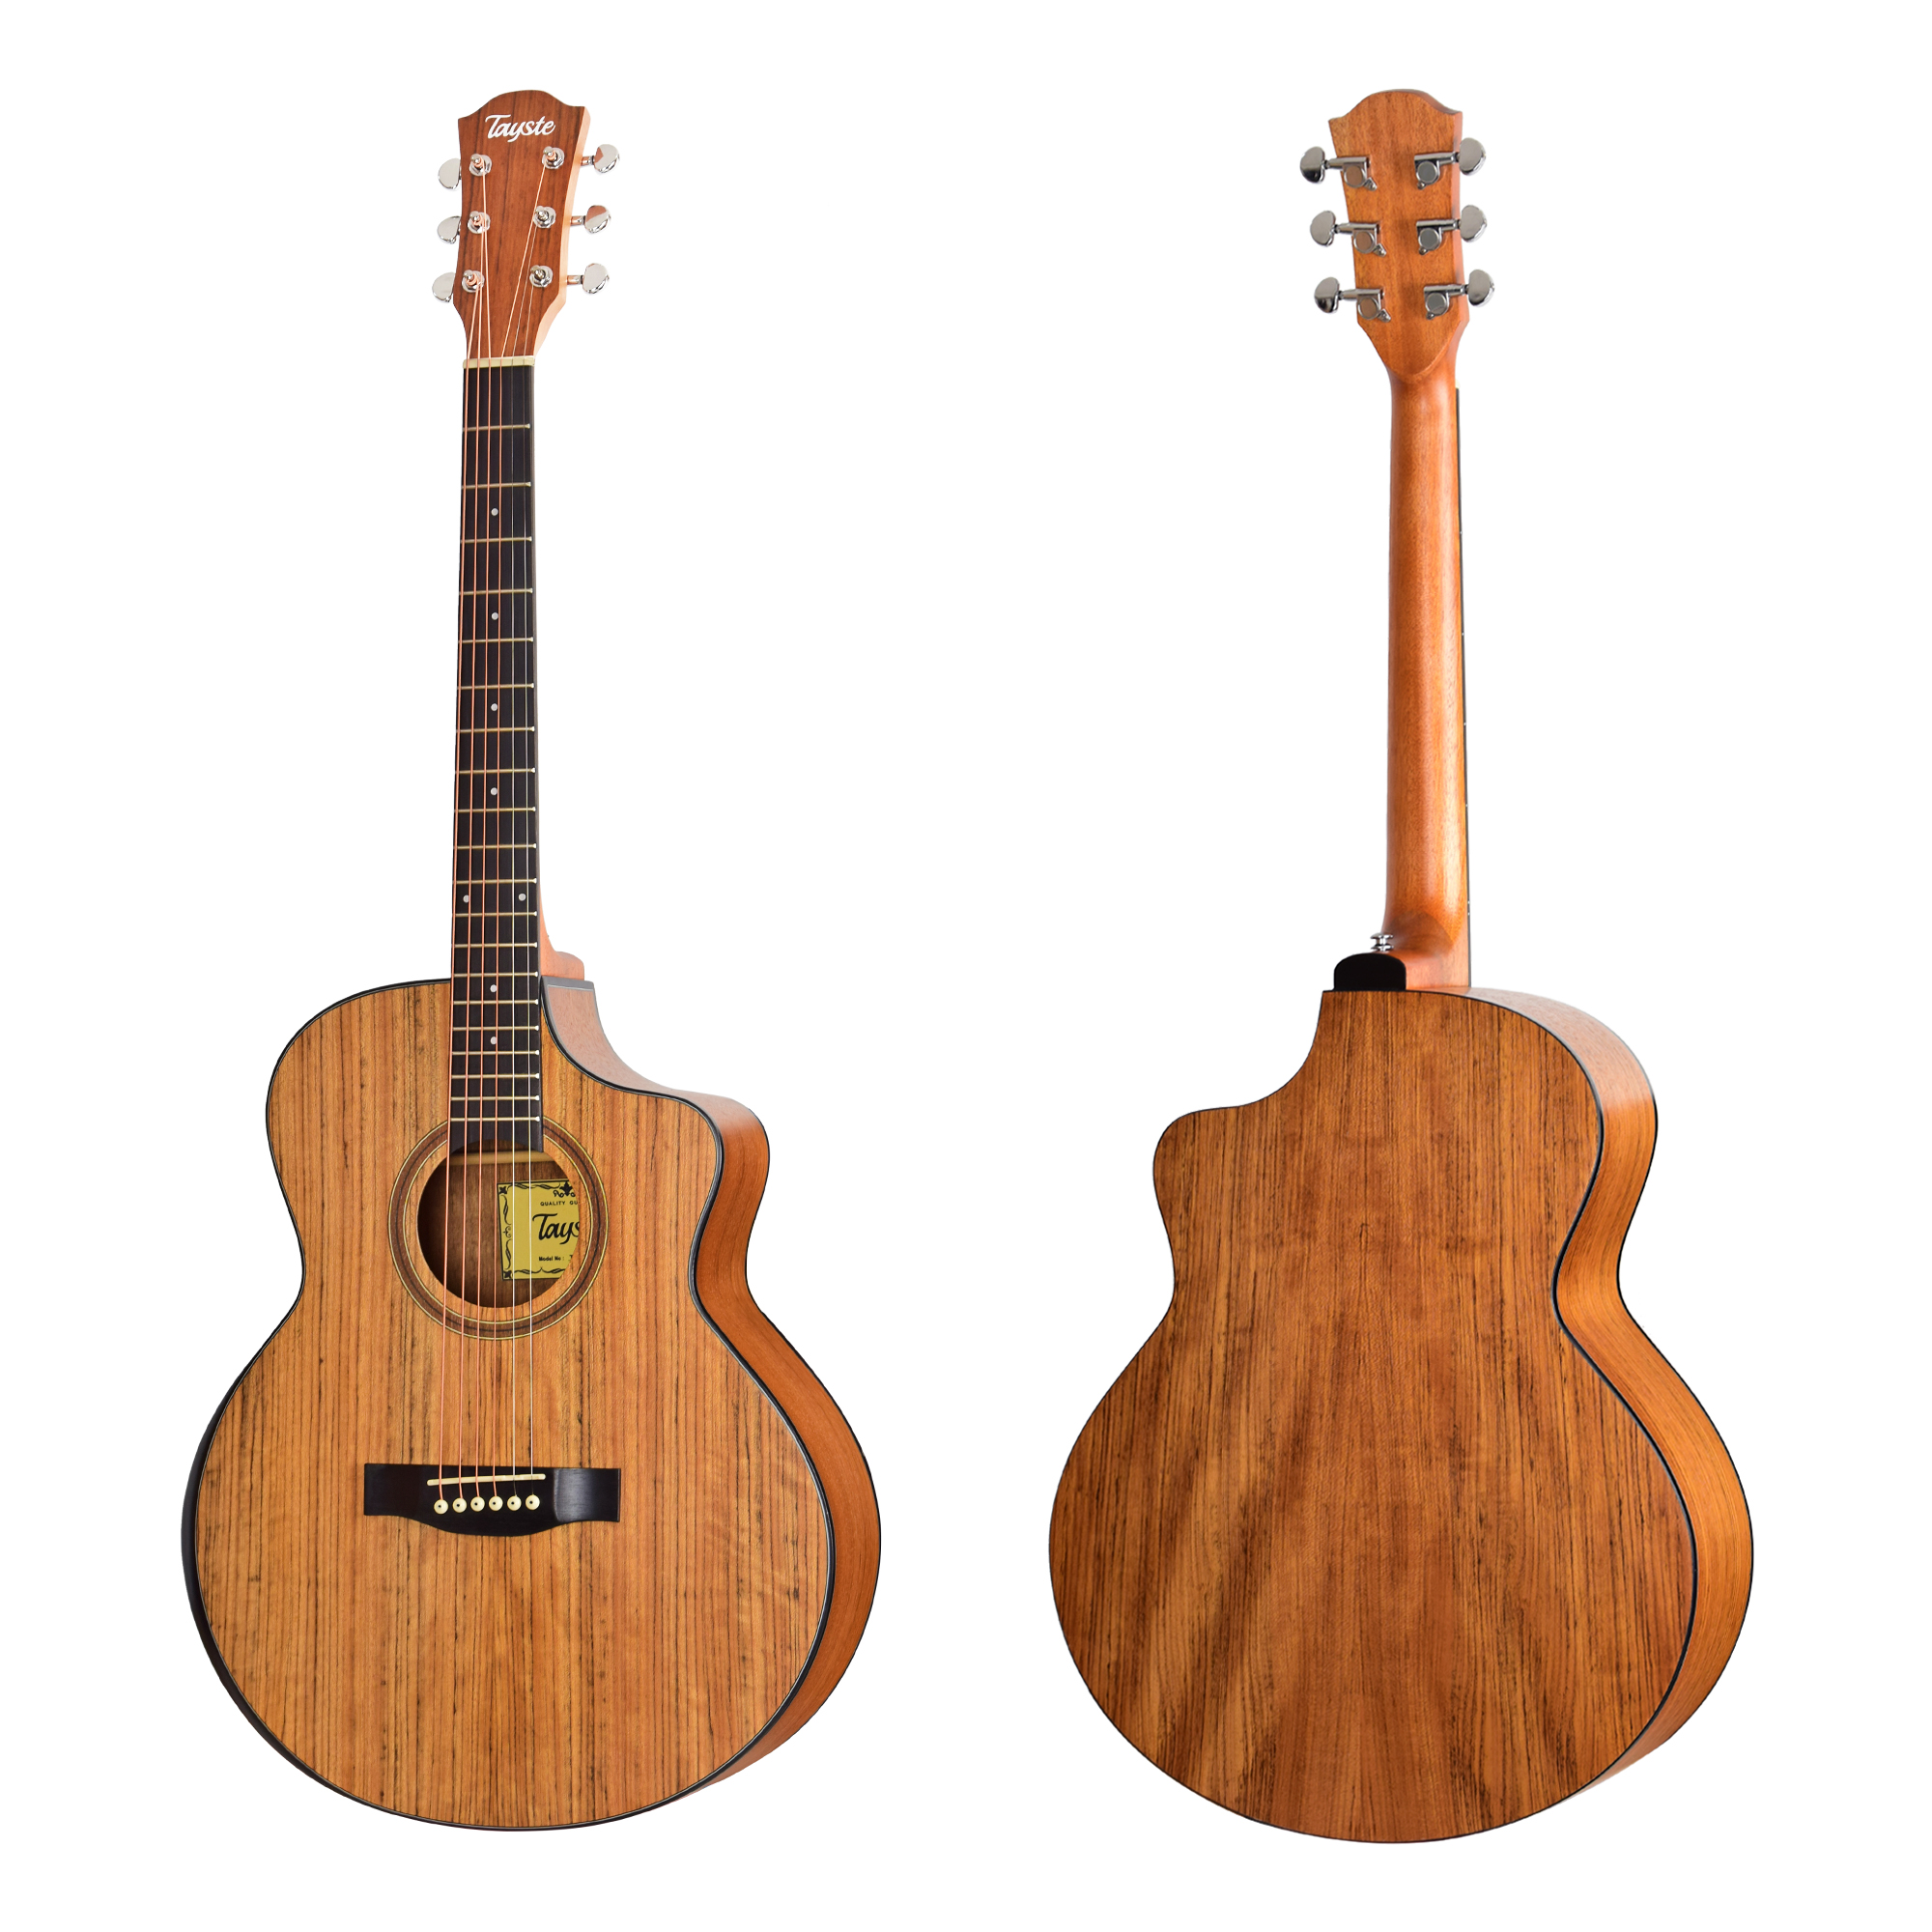 TS-J35-A walnut wood acoustic guitar